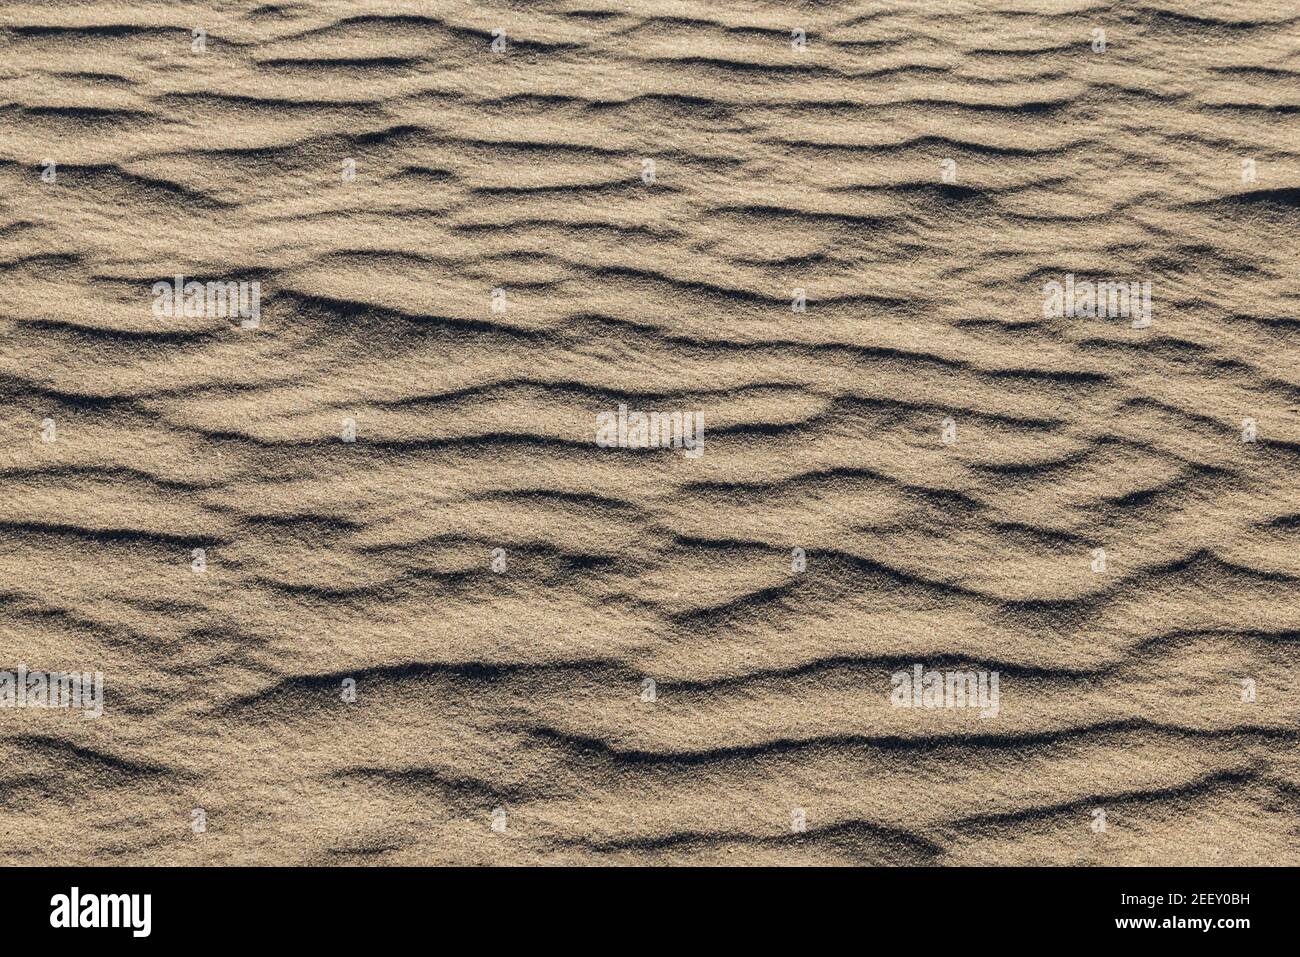 Motifs dans le sable créé par le vent, Mesquite Dunes, Vallée de la mort, Californie. Banque D'Images